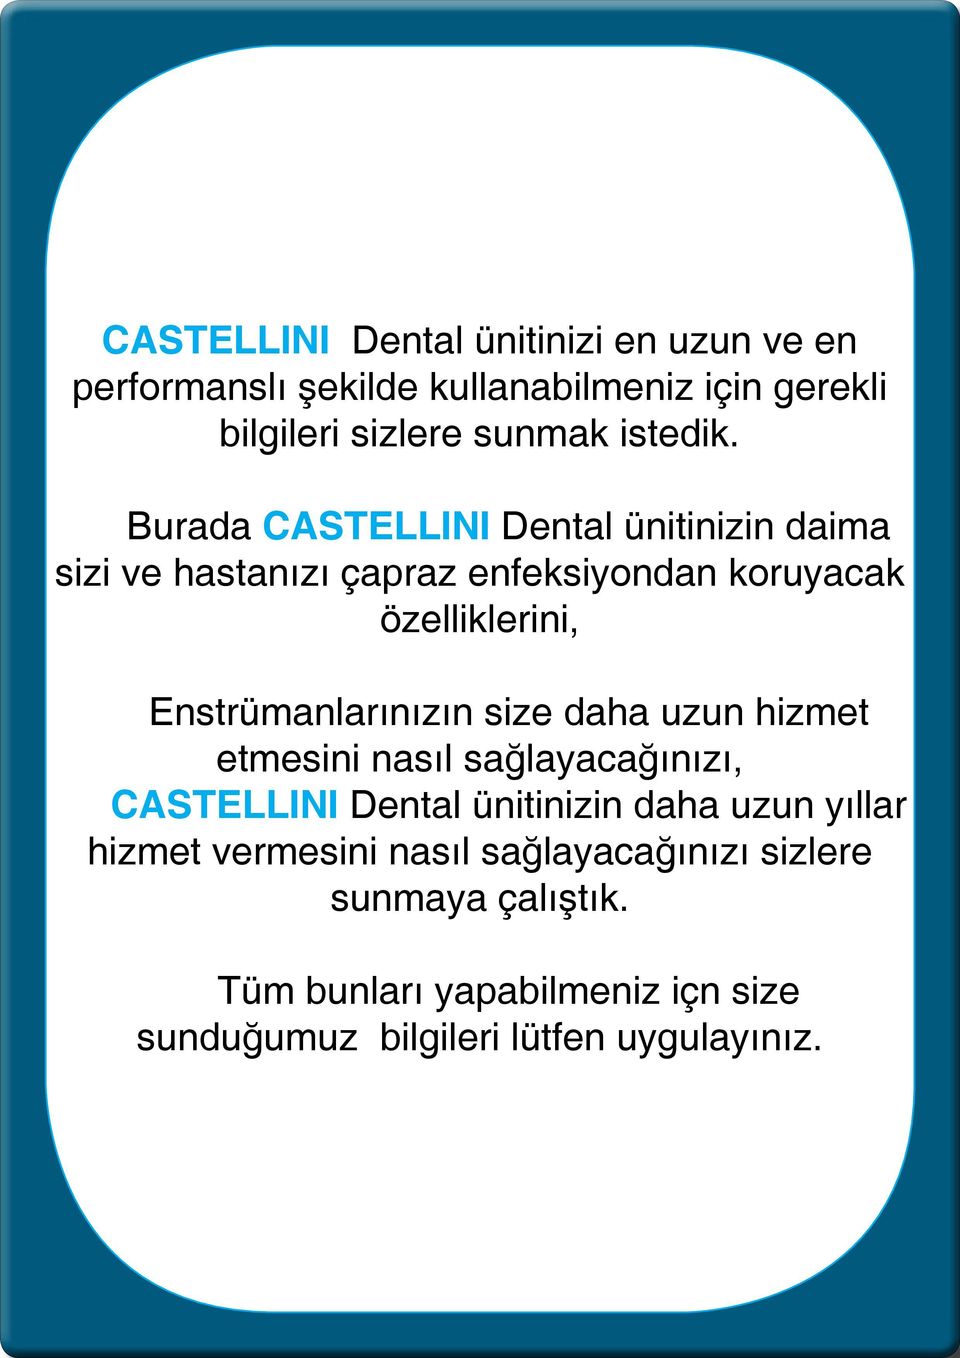 Burada CASTELLINI Dental ünitinizin daima sizi ve hastanızı çapraz enfeksiyondan koruyacak özelliklerini,